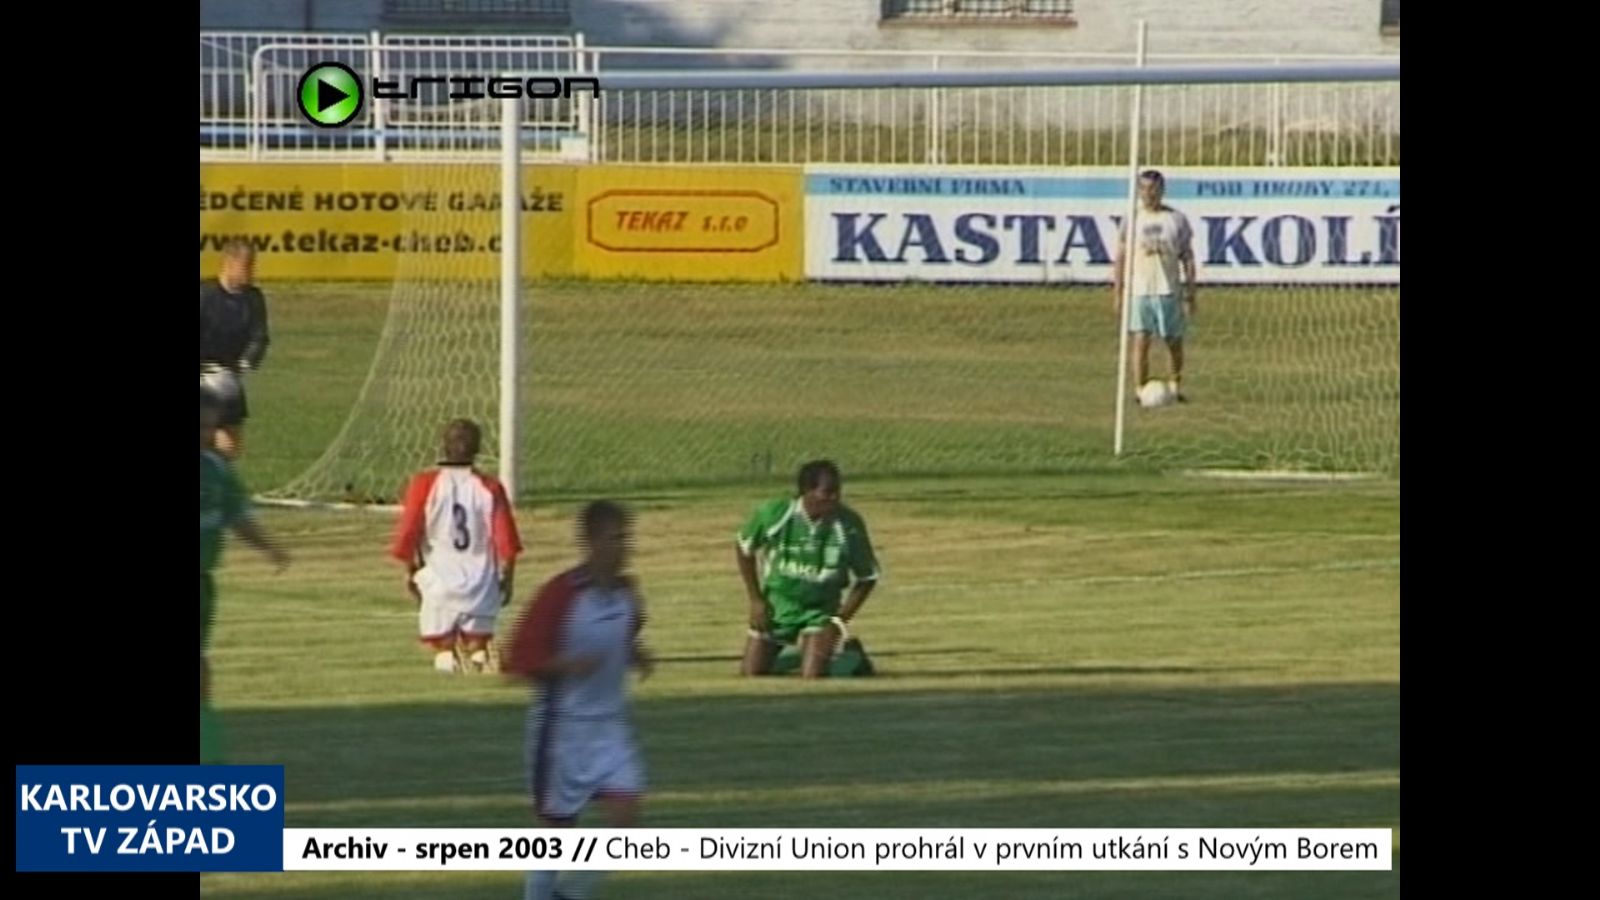 2003 – Cheb: Divizní Union prohrál v prvním utkání s Novým Borem 0:1 (TV Západ)